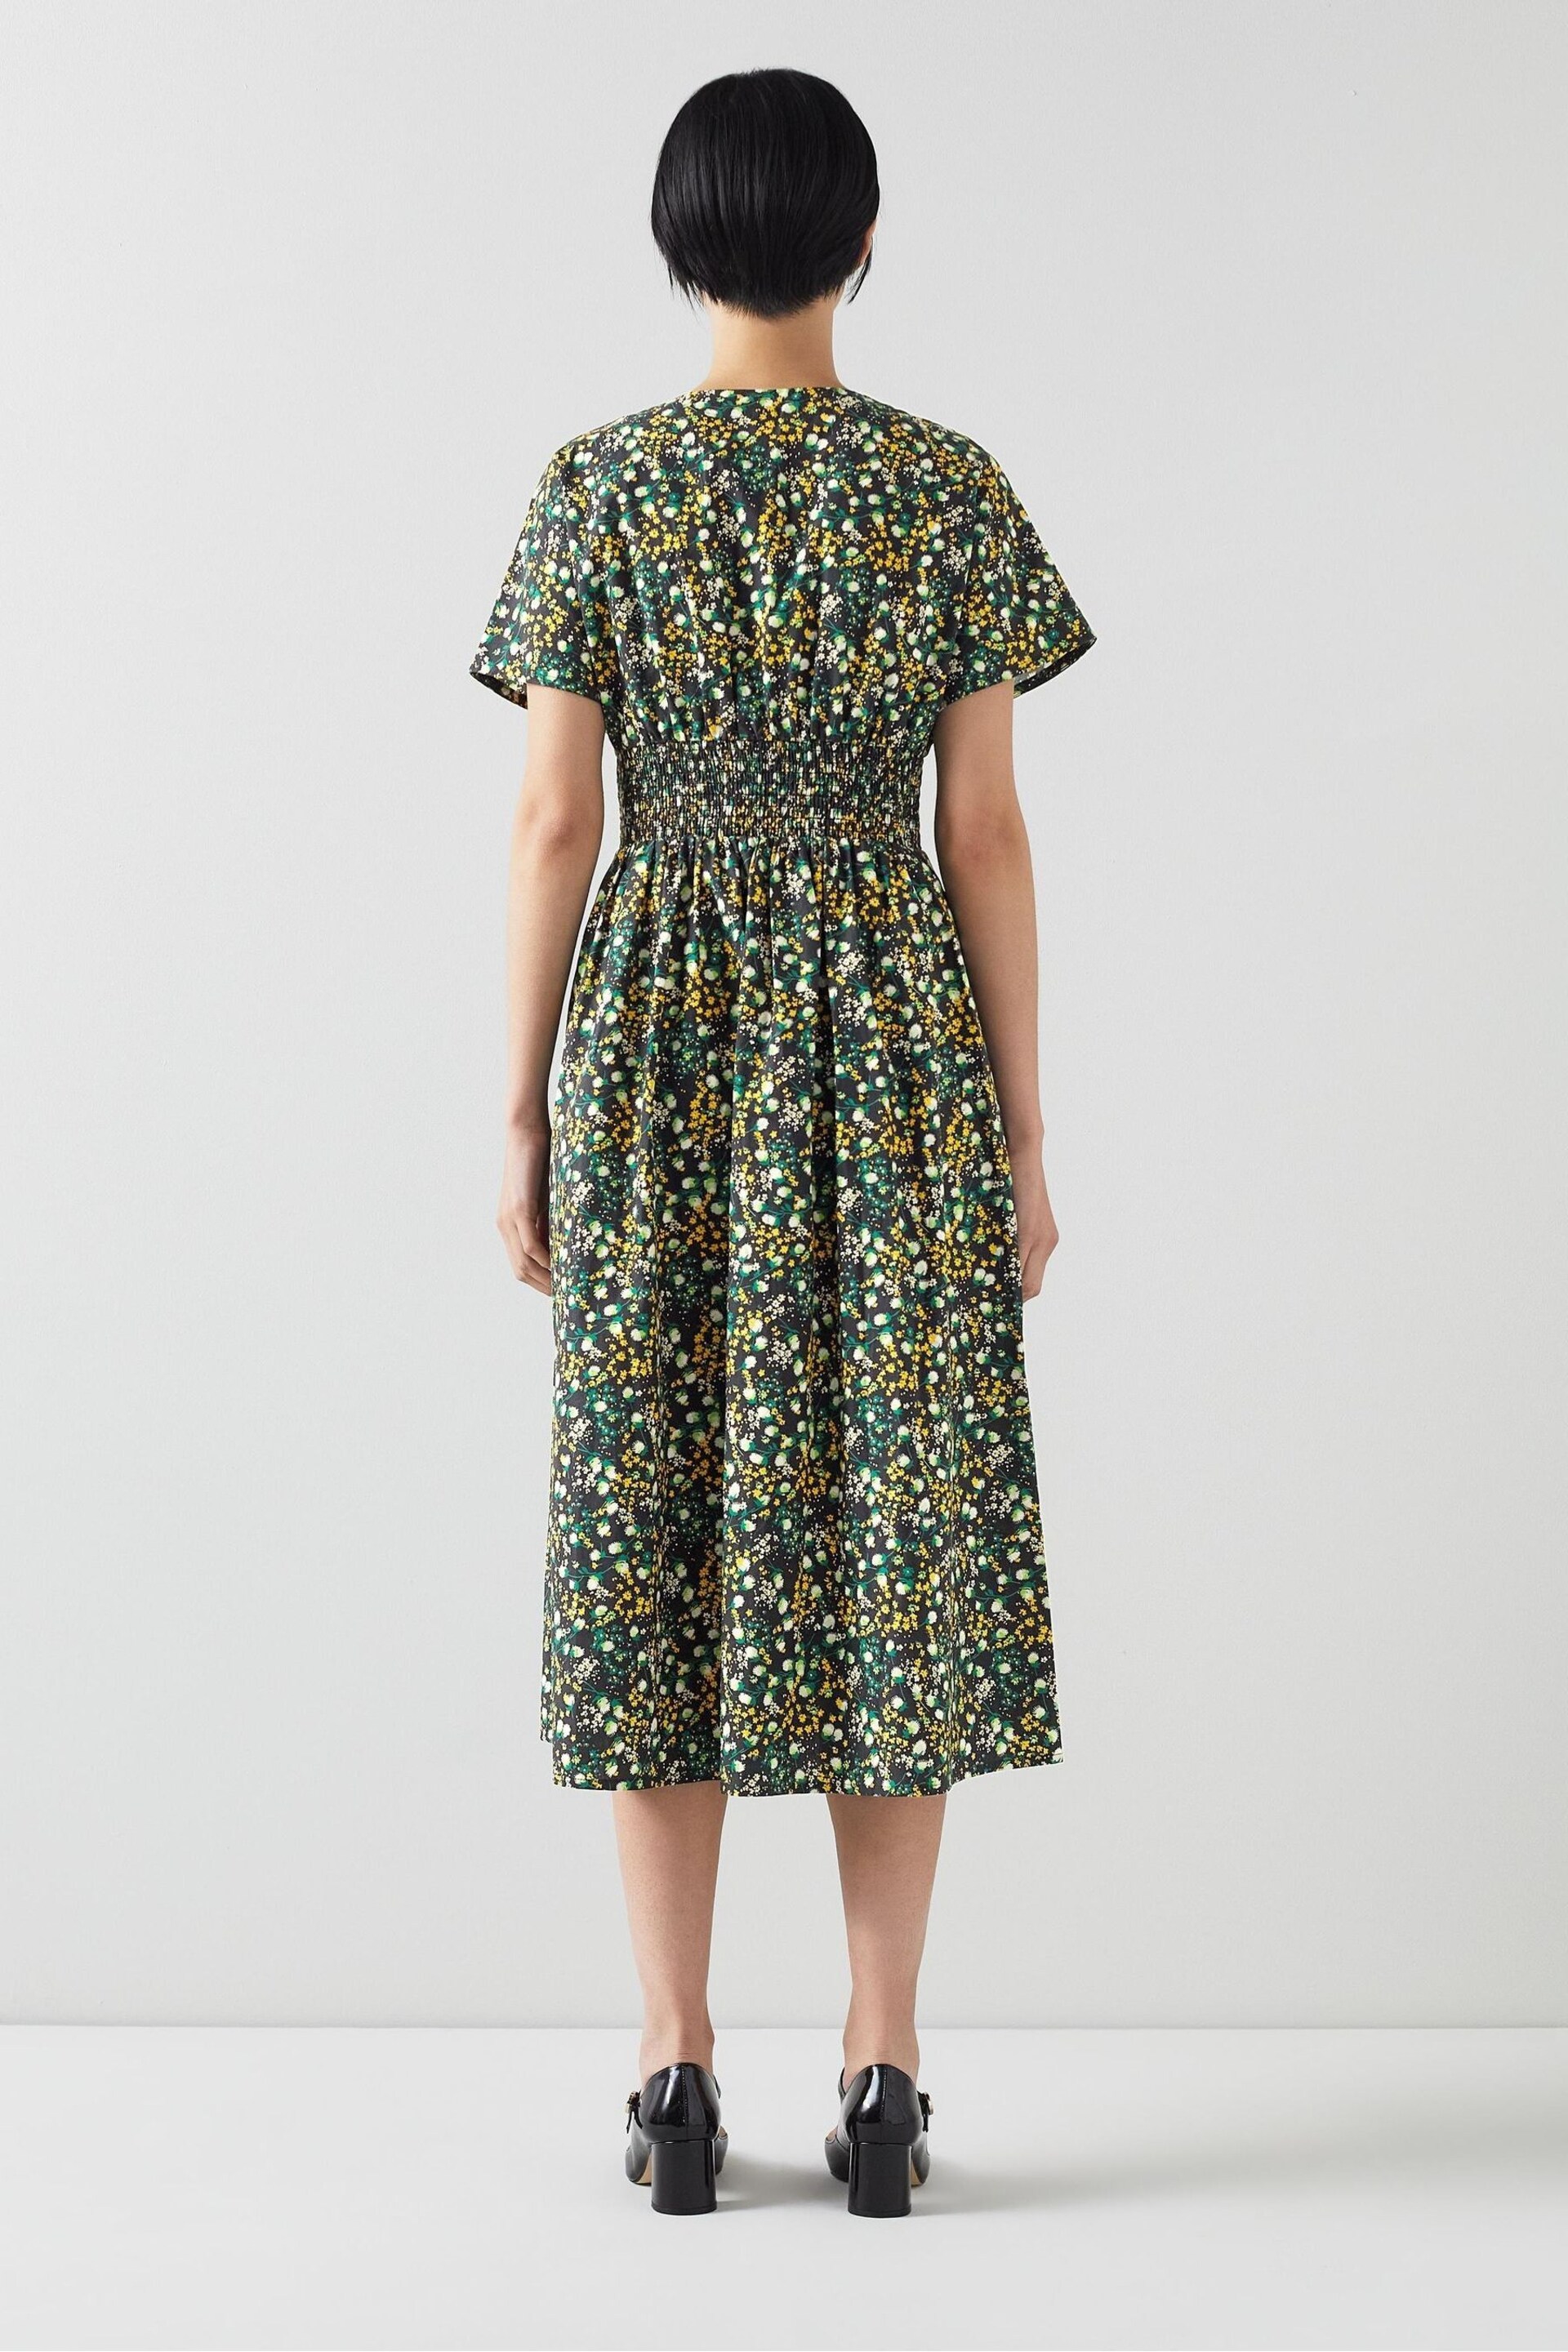 LK Bennett Eva Cotton Buttercup Meadow Print Dress - Image 2 of 3